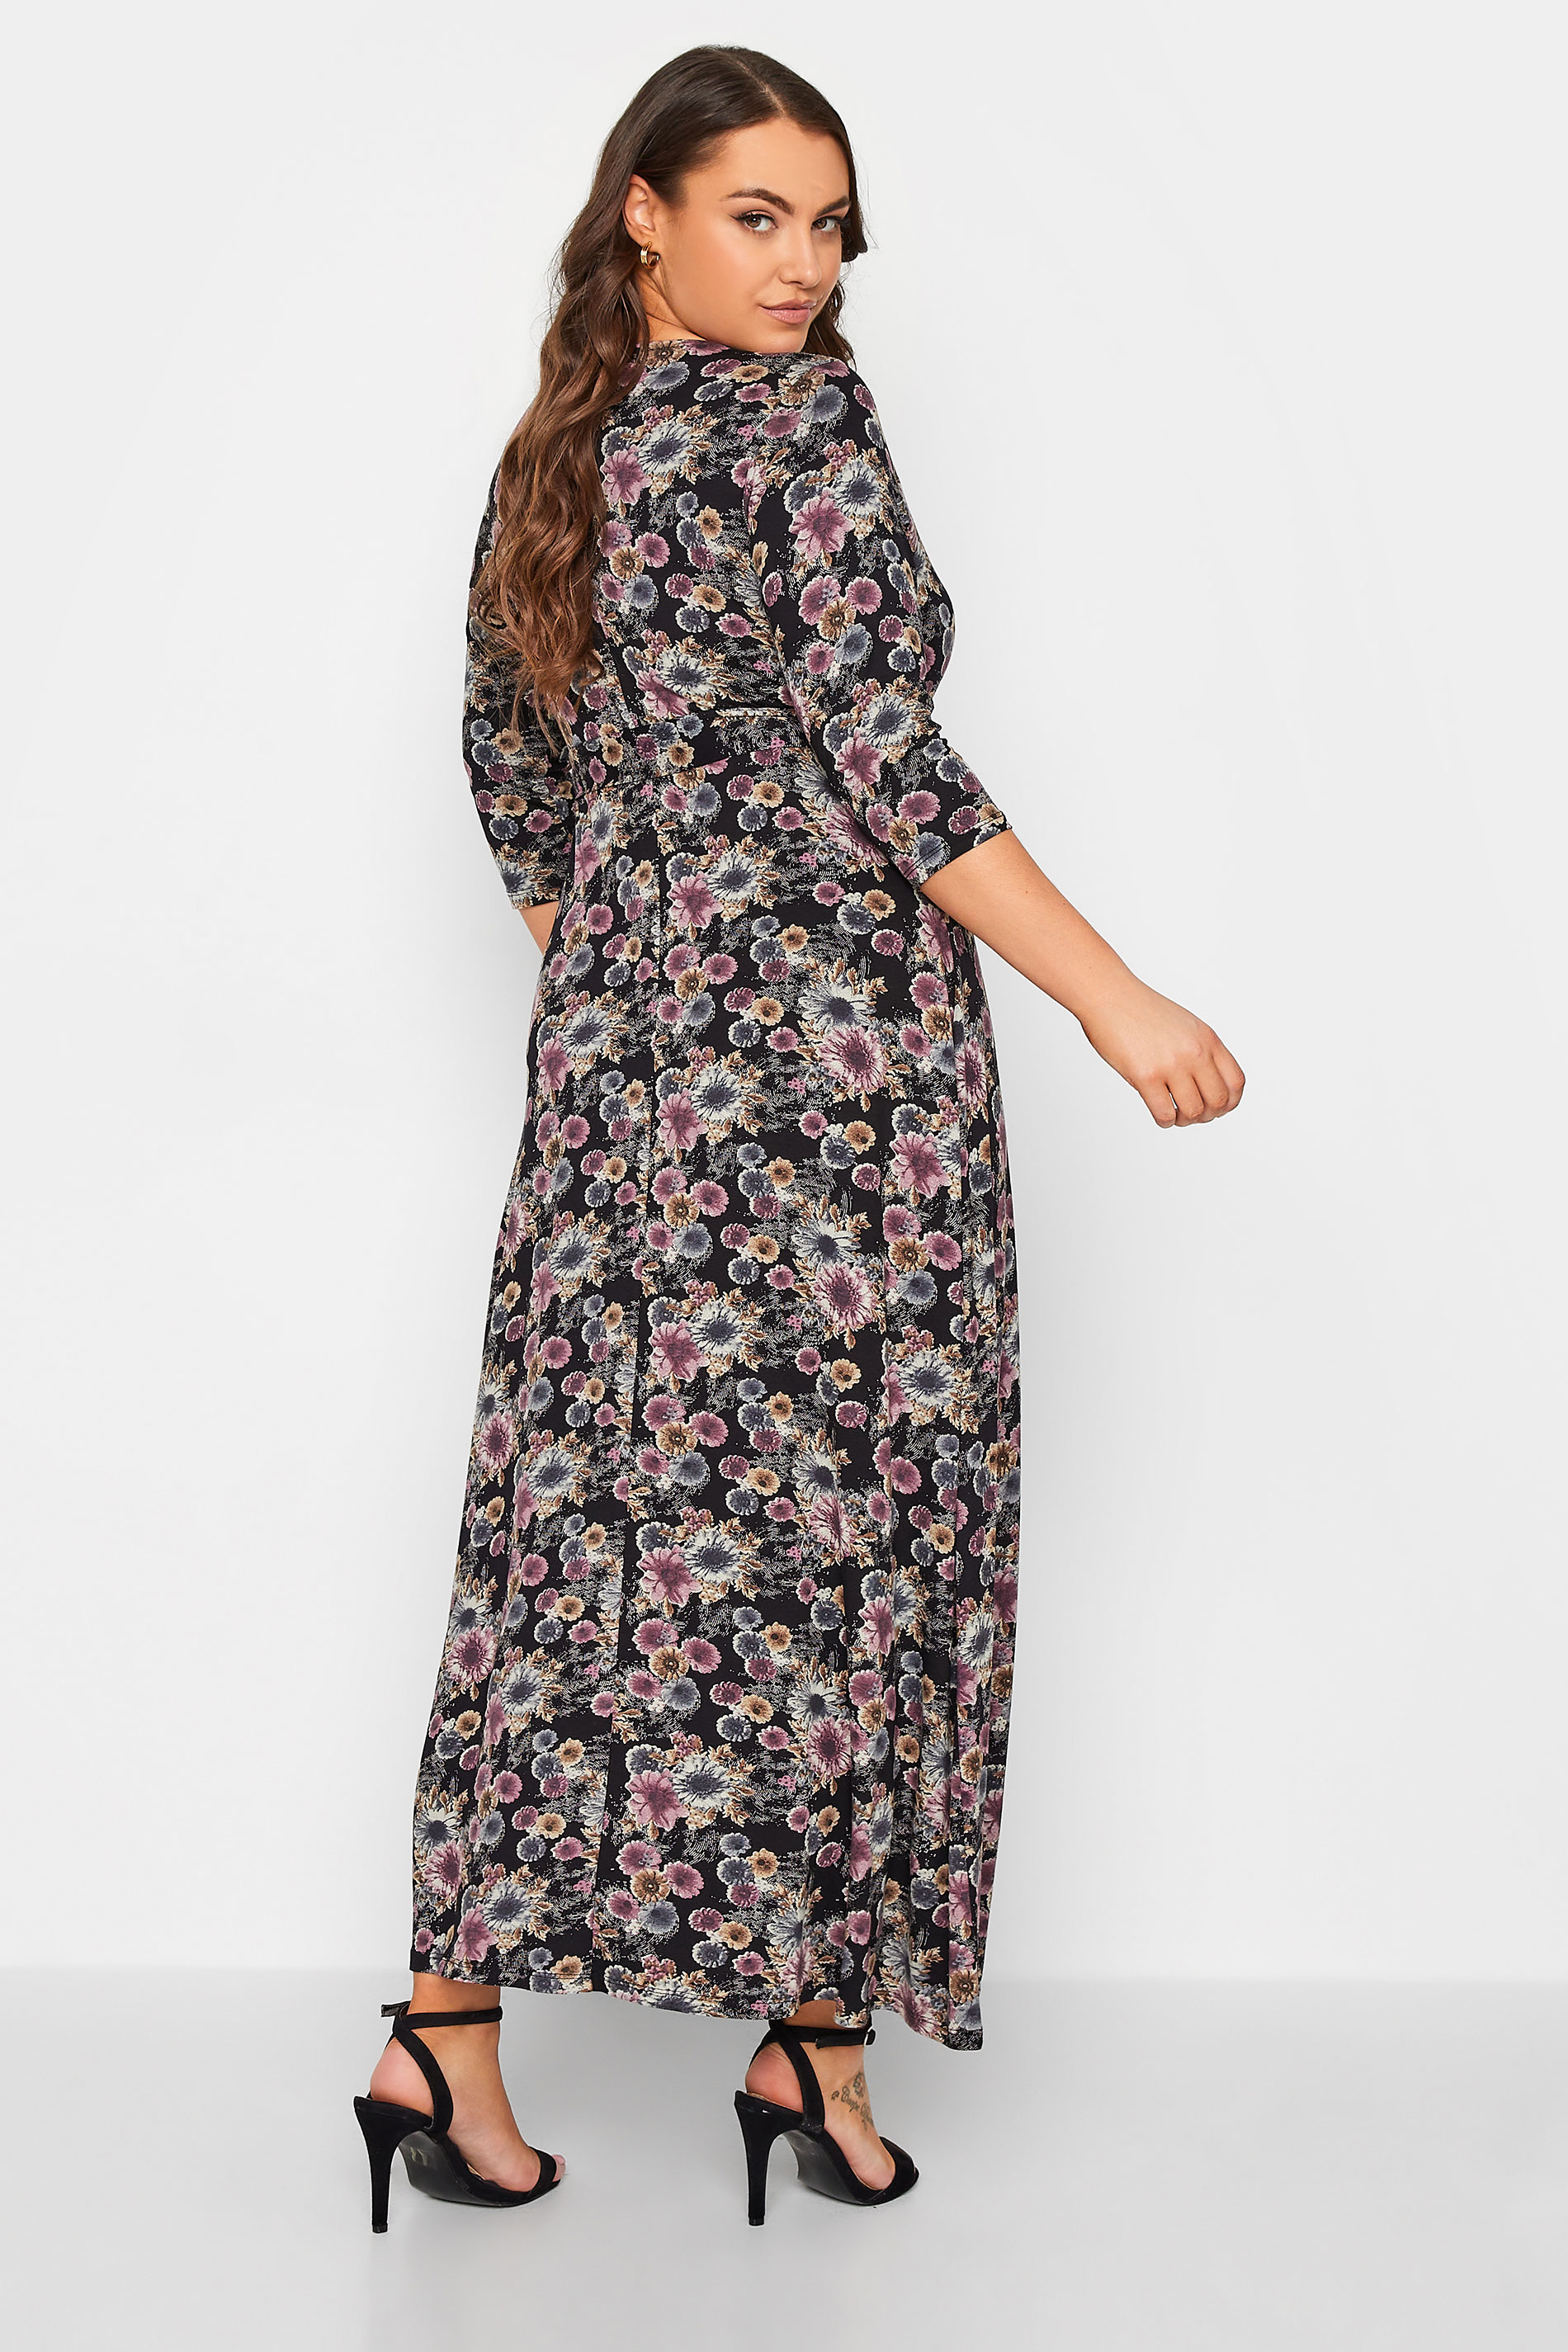 Plus Size Black Floral Wrap Maxi Dress | Yours Clothing 3